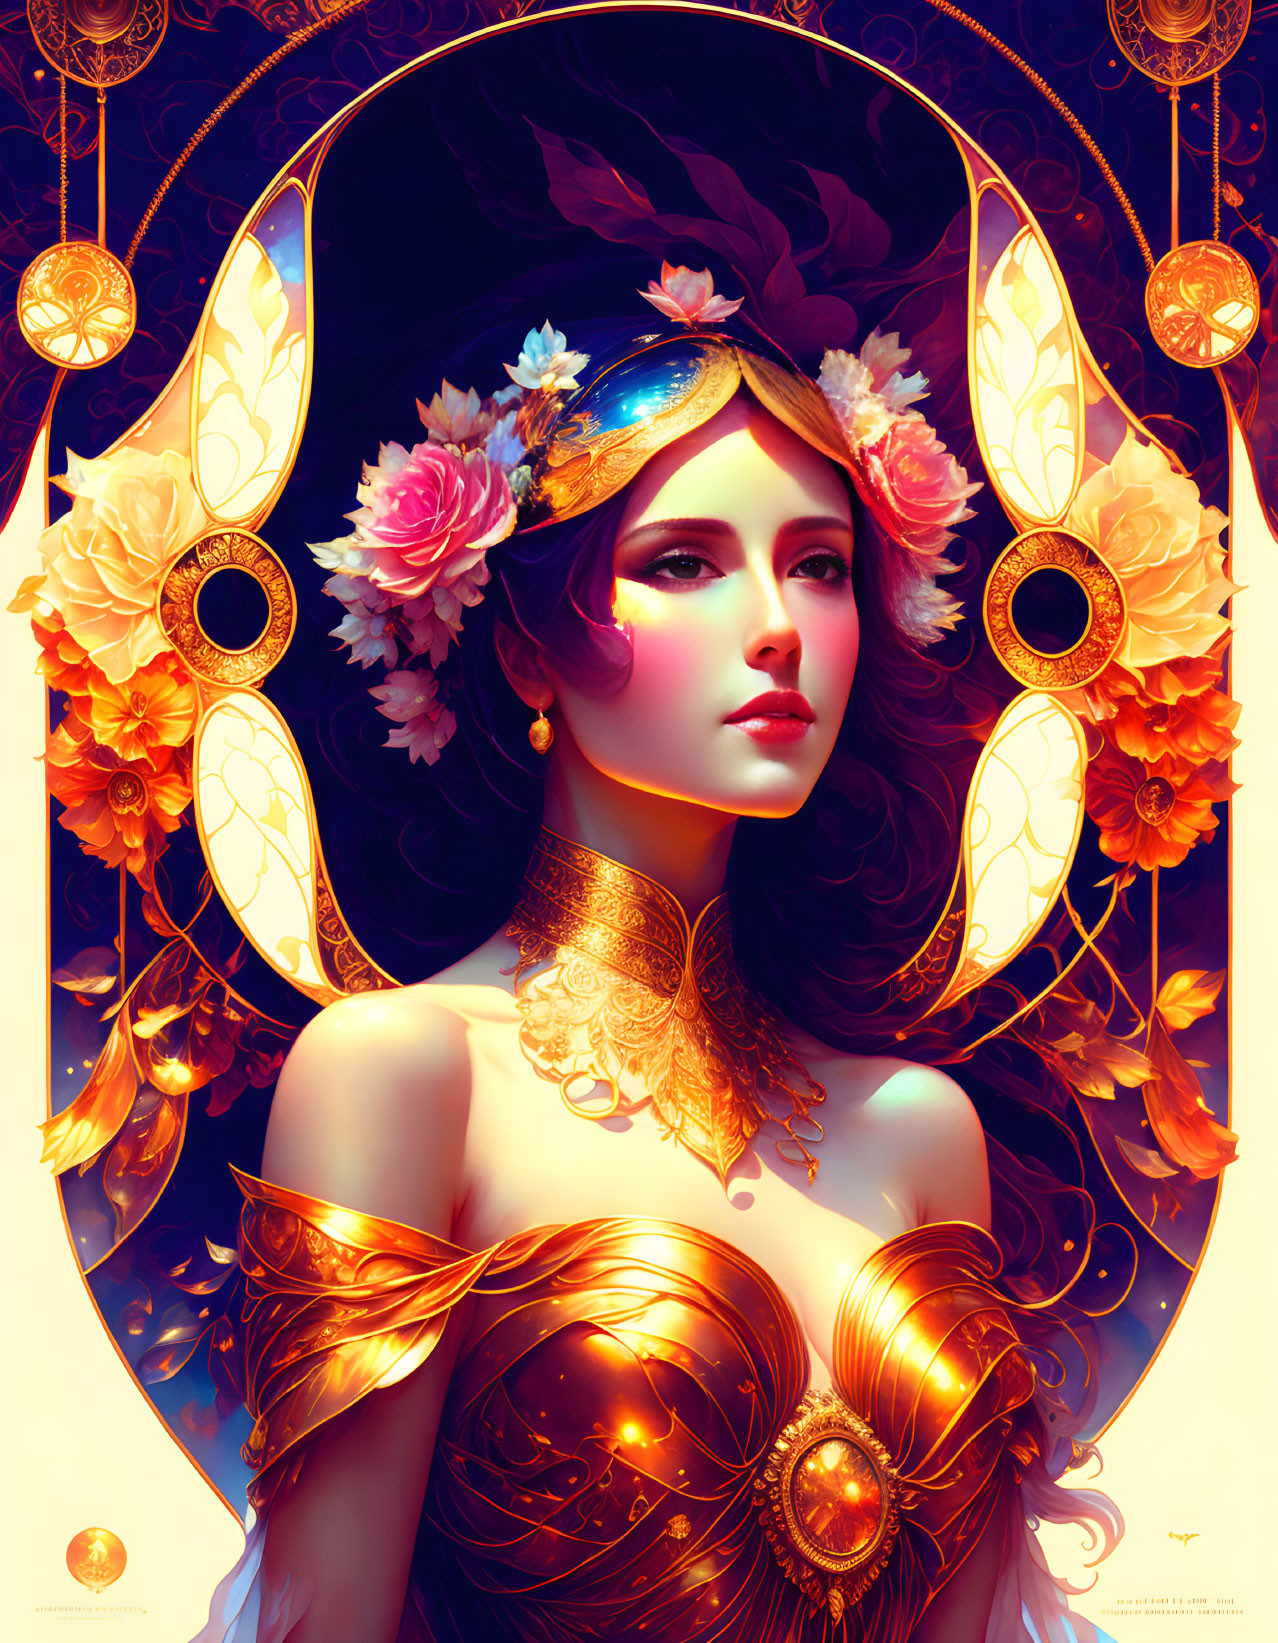 Elaborate Golden Headpiece Woman Portrait in Art Nouveau Style